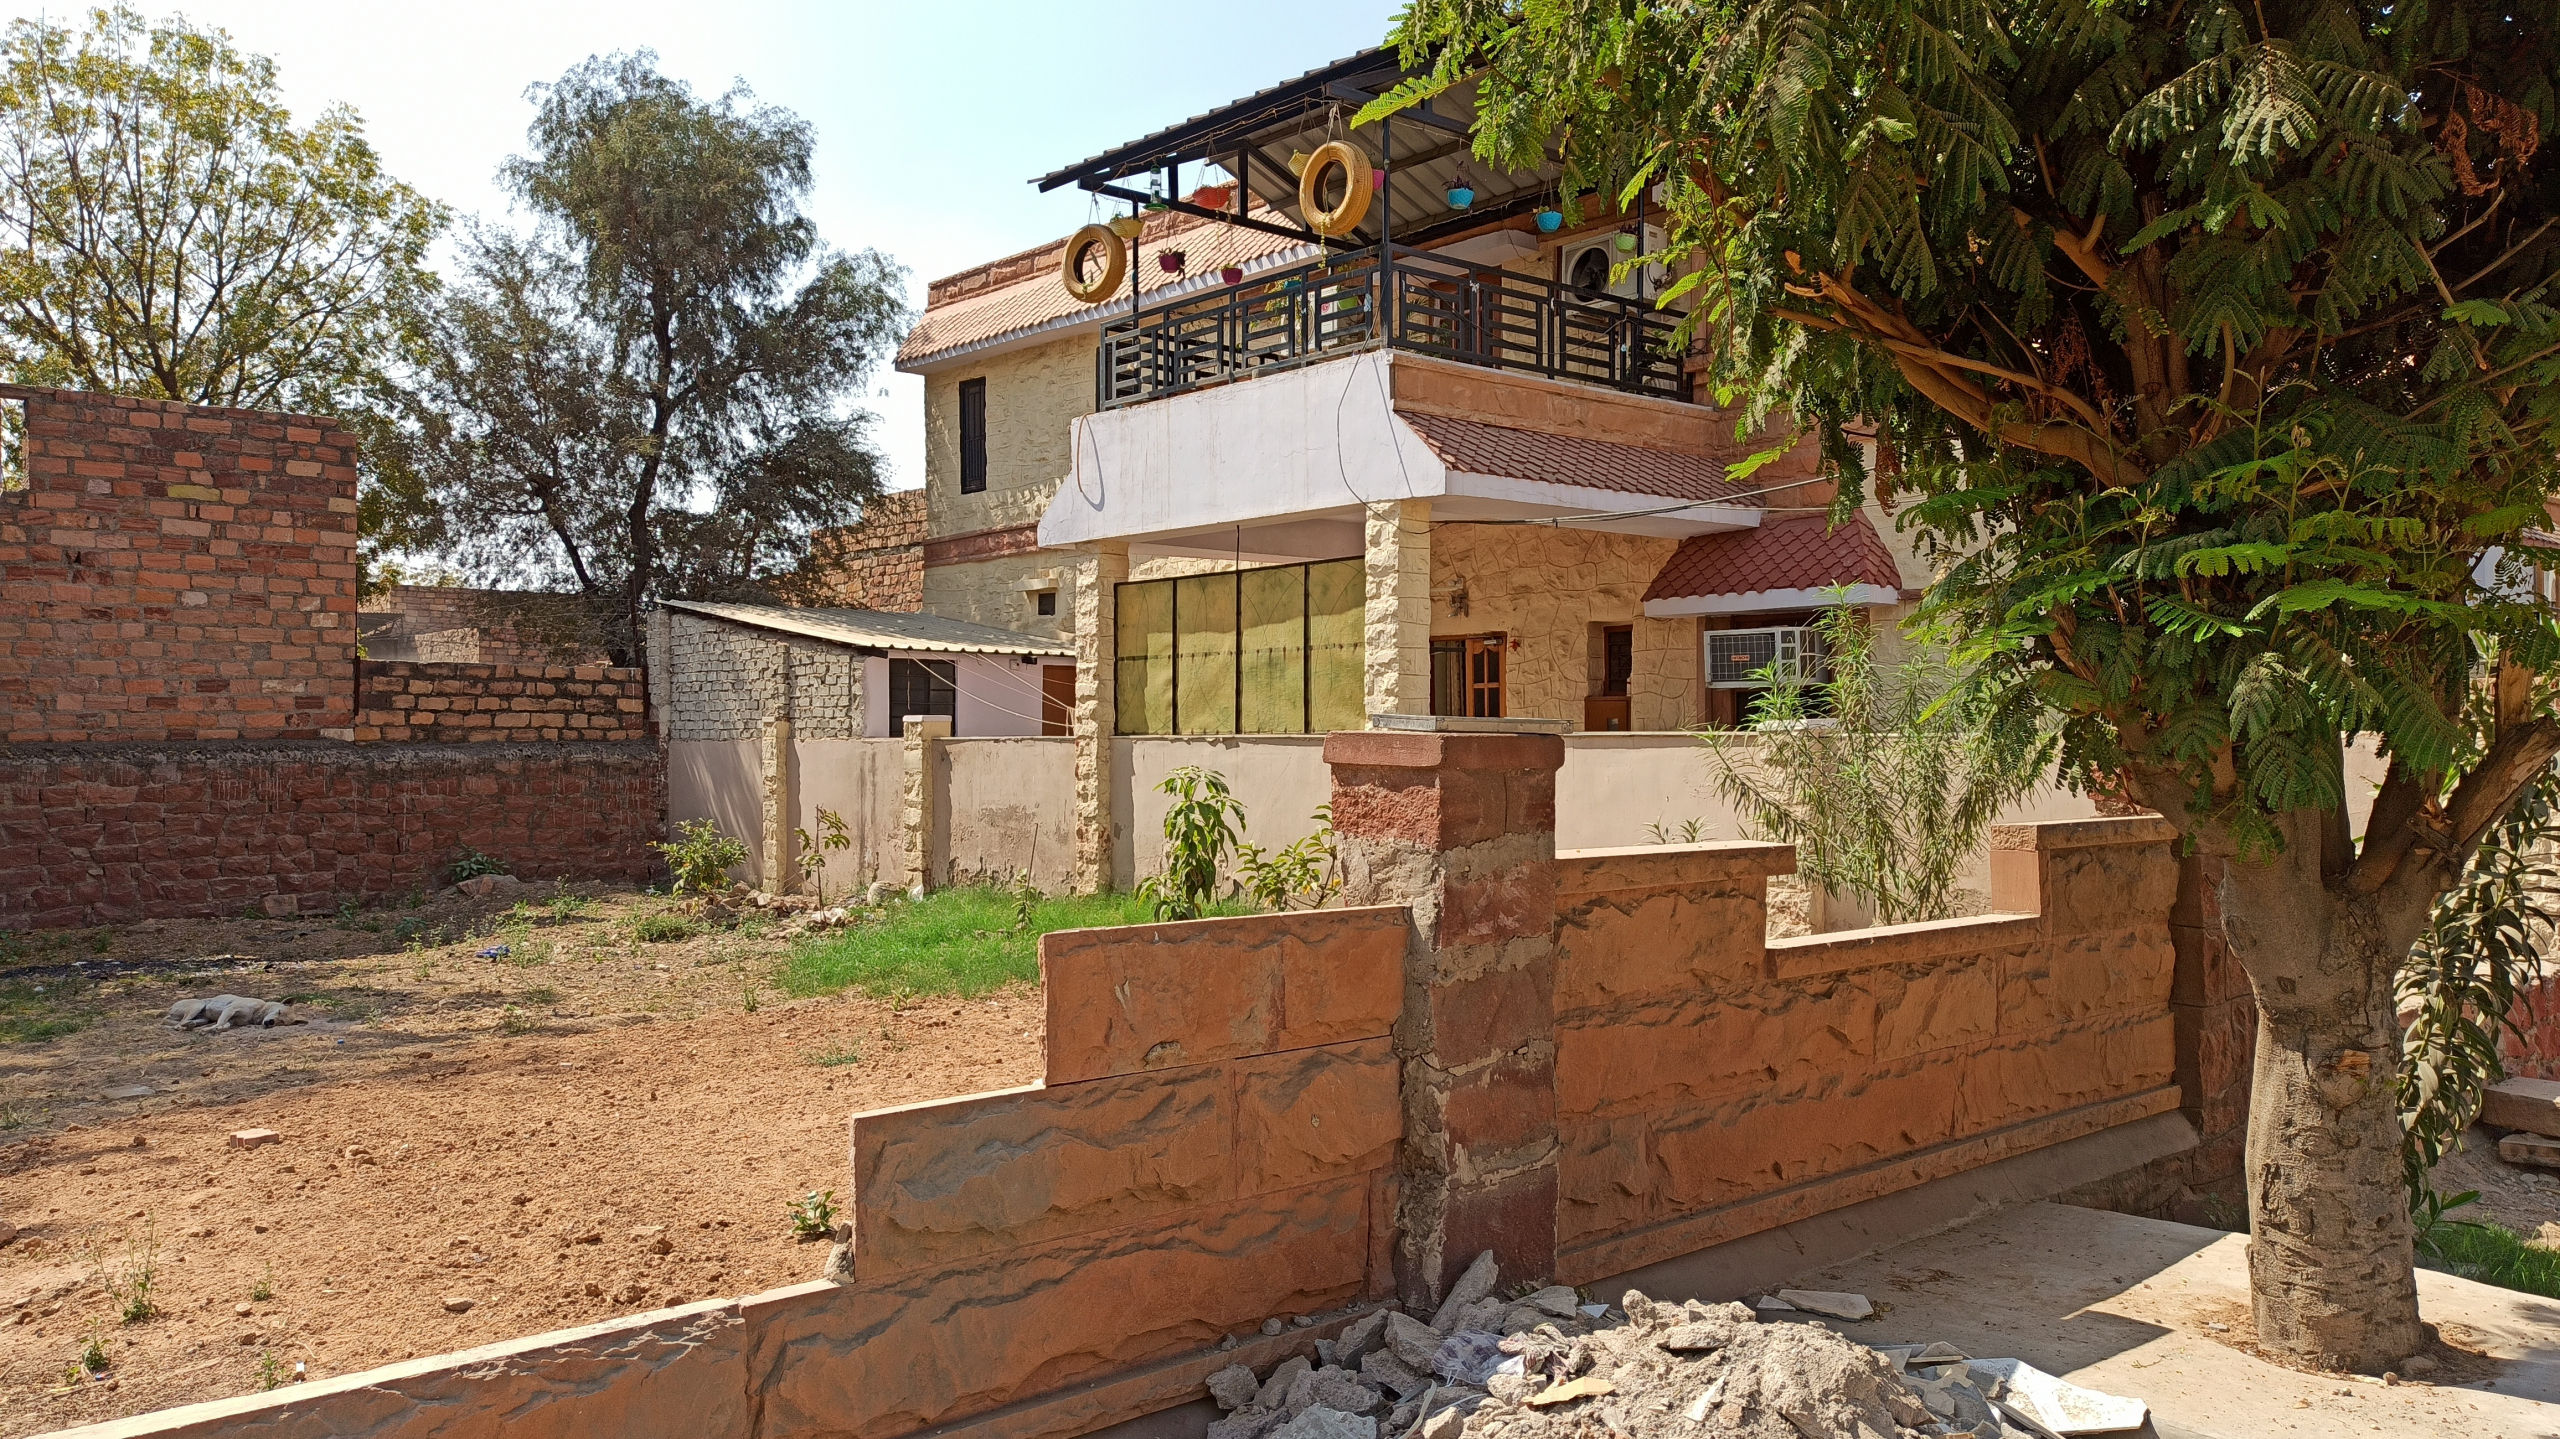 Surana Realtors - Buy Residential Plot in Jodhpur